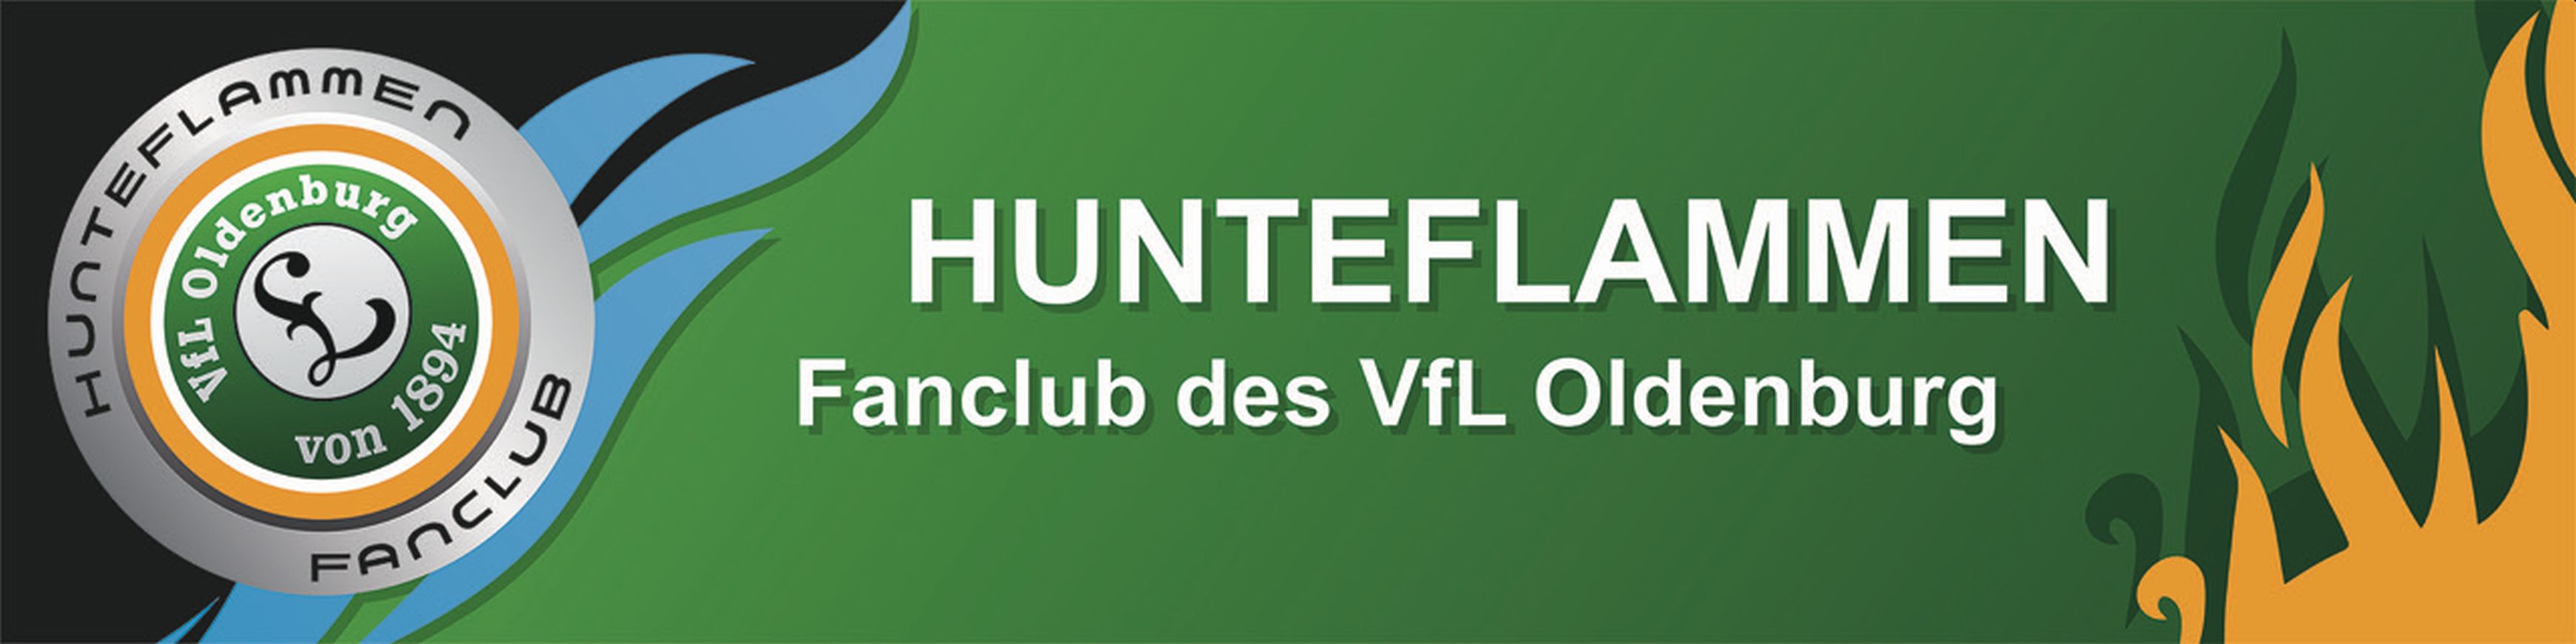 Banner Fanclub Hunteflammen